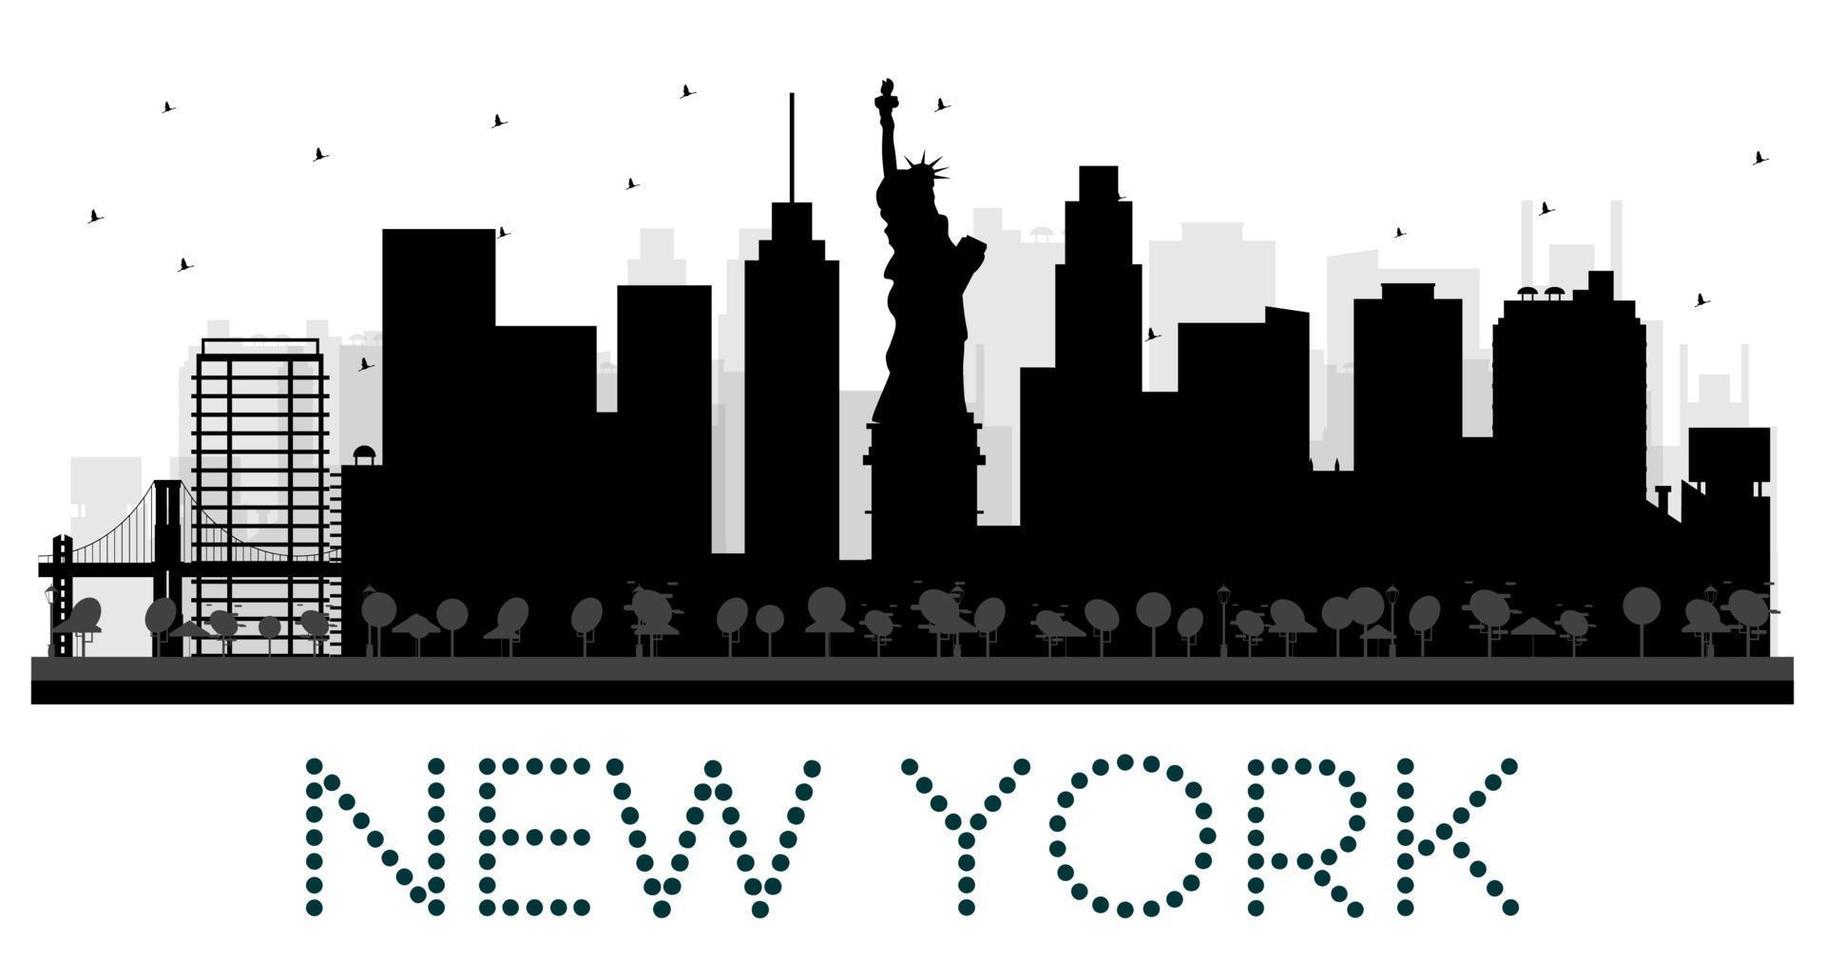 silueta en blanco y negro del horizonte de la ciudad de nueva york. vector